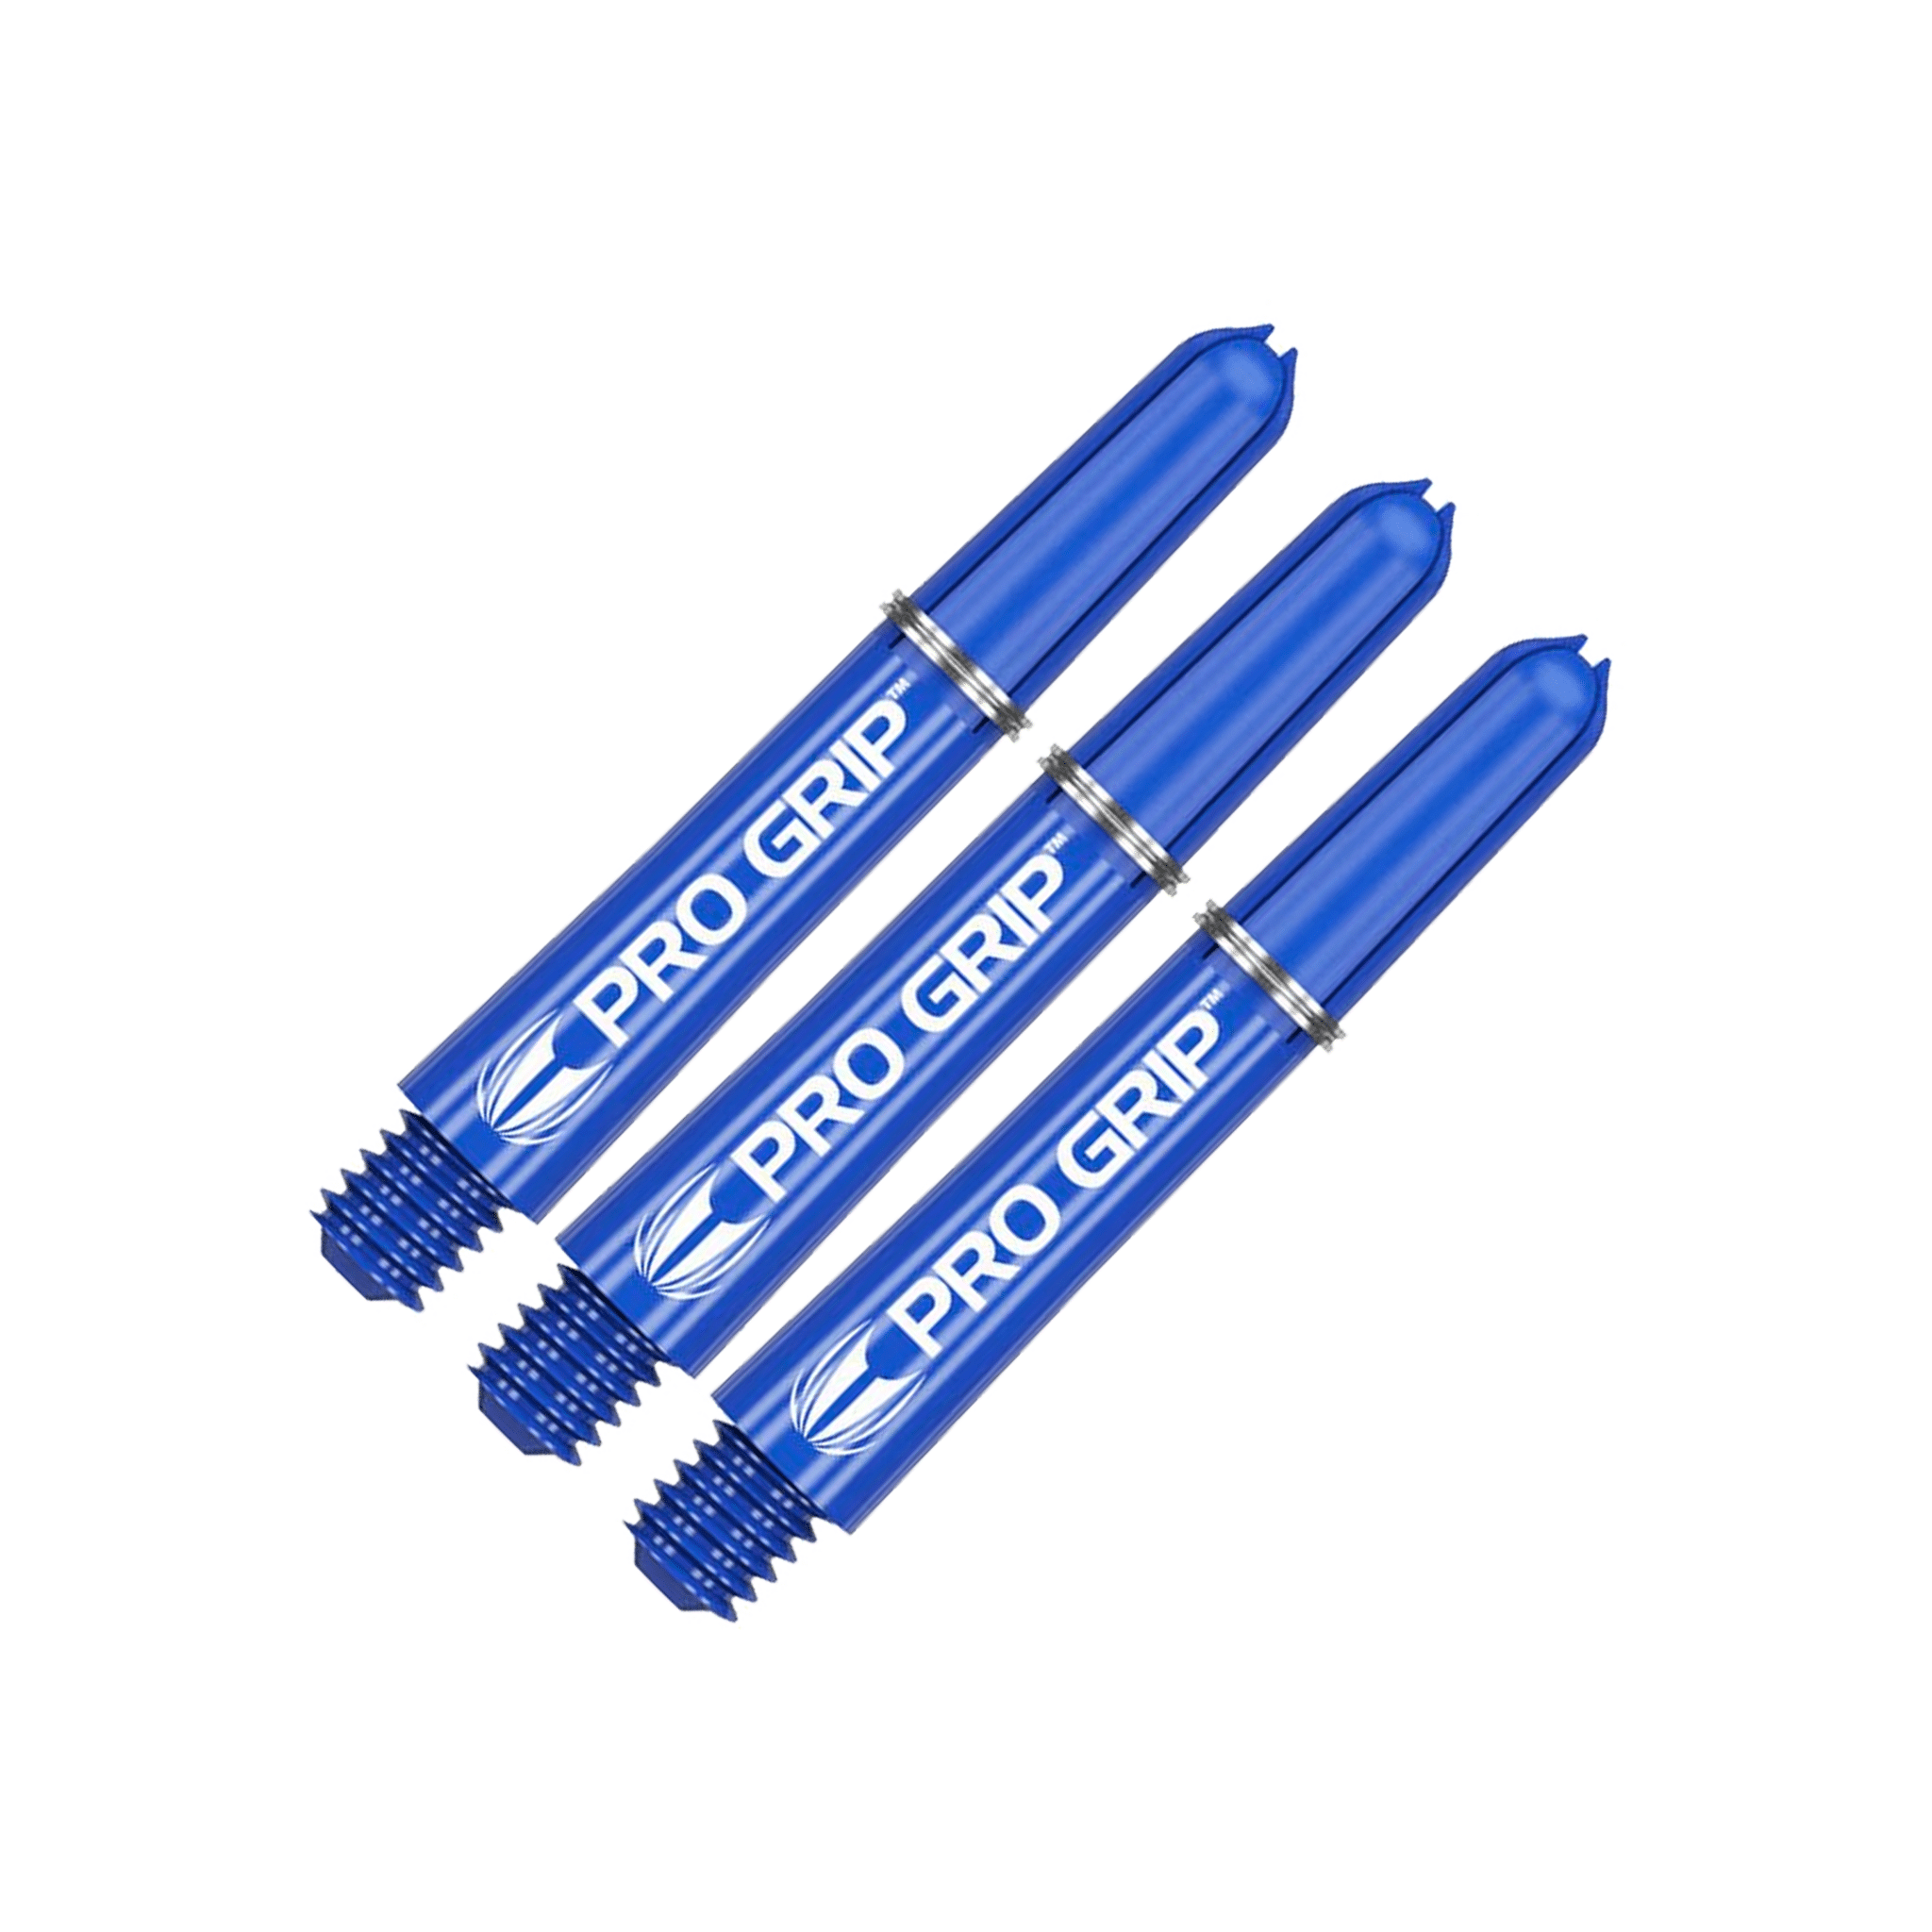 Target Pro Grip Multi Pack - Nylon Dart Shafts (3 Sets) Blue / Short (34mm) Shafts